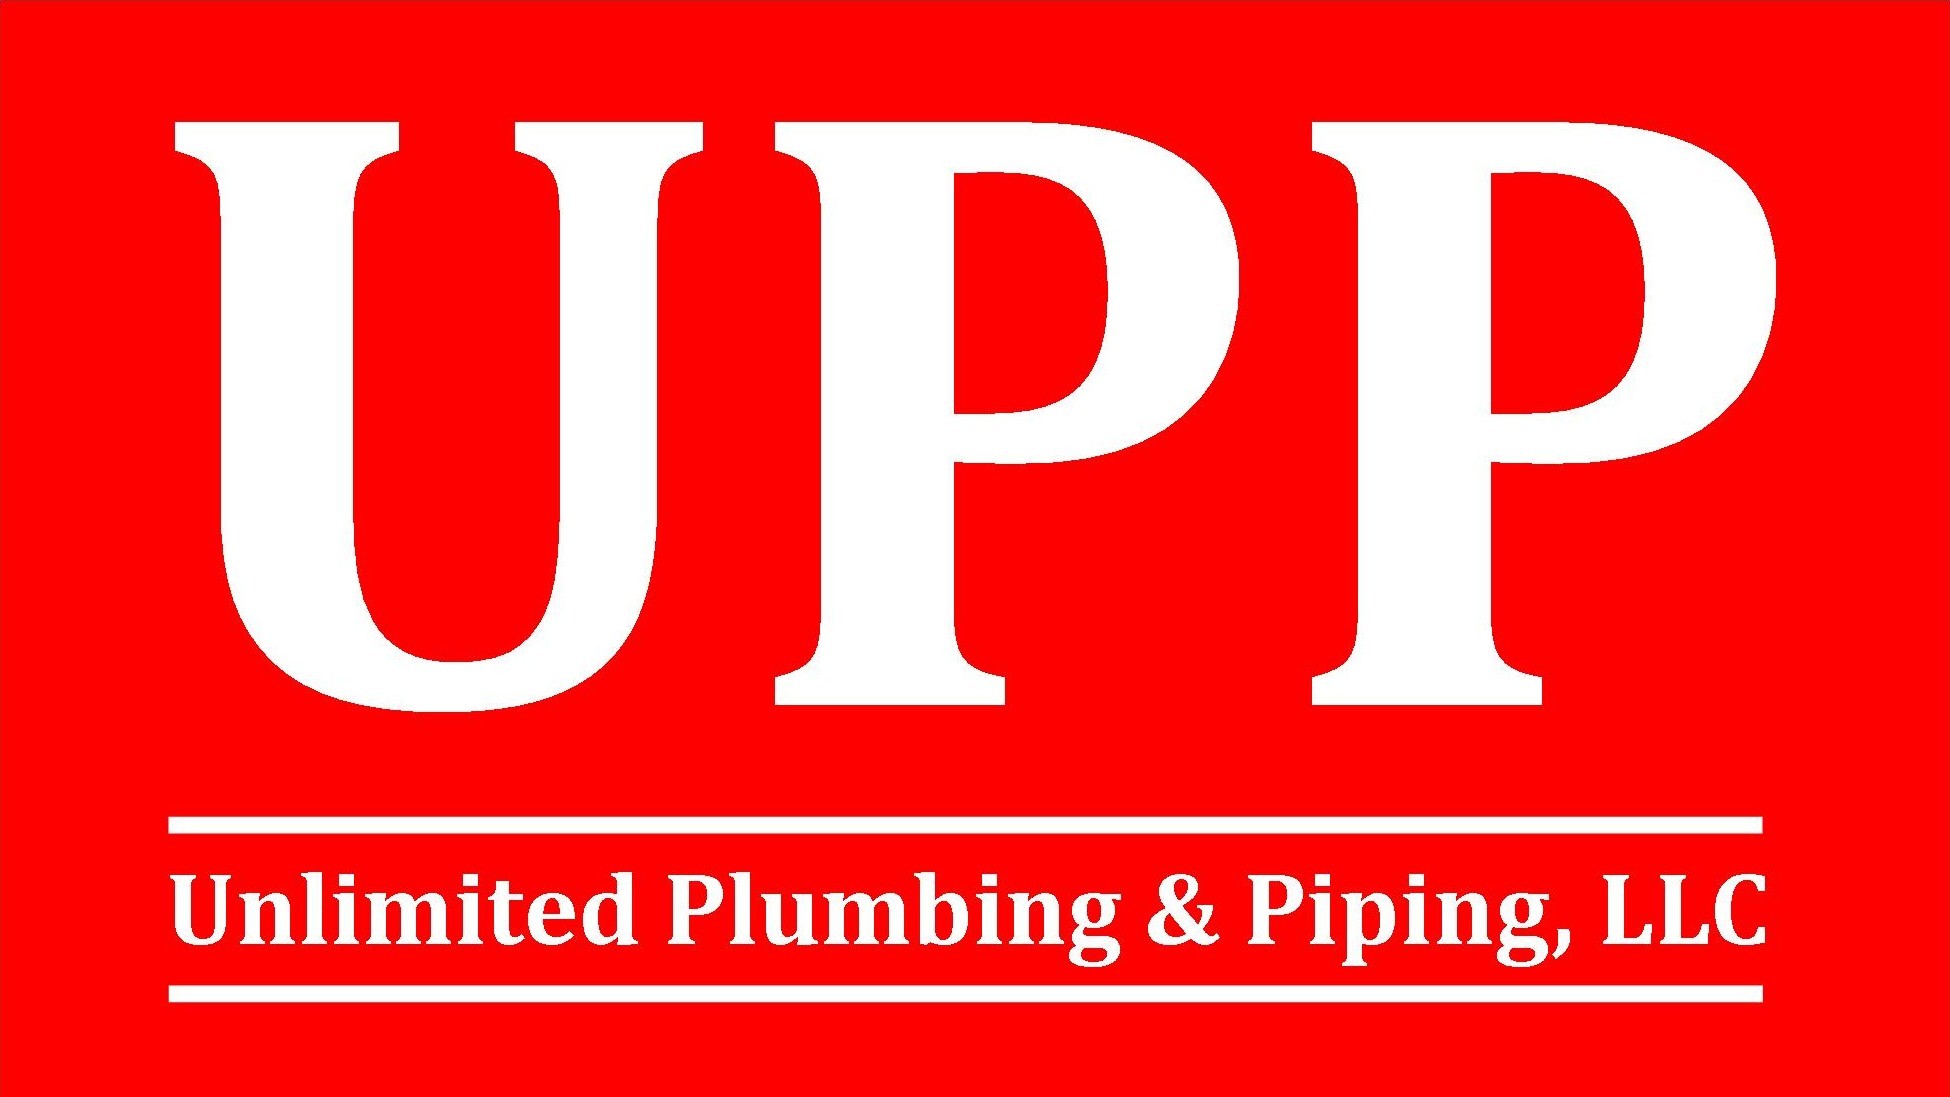 UPP Logo